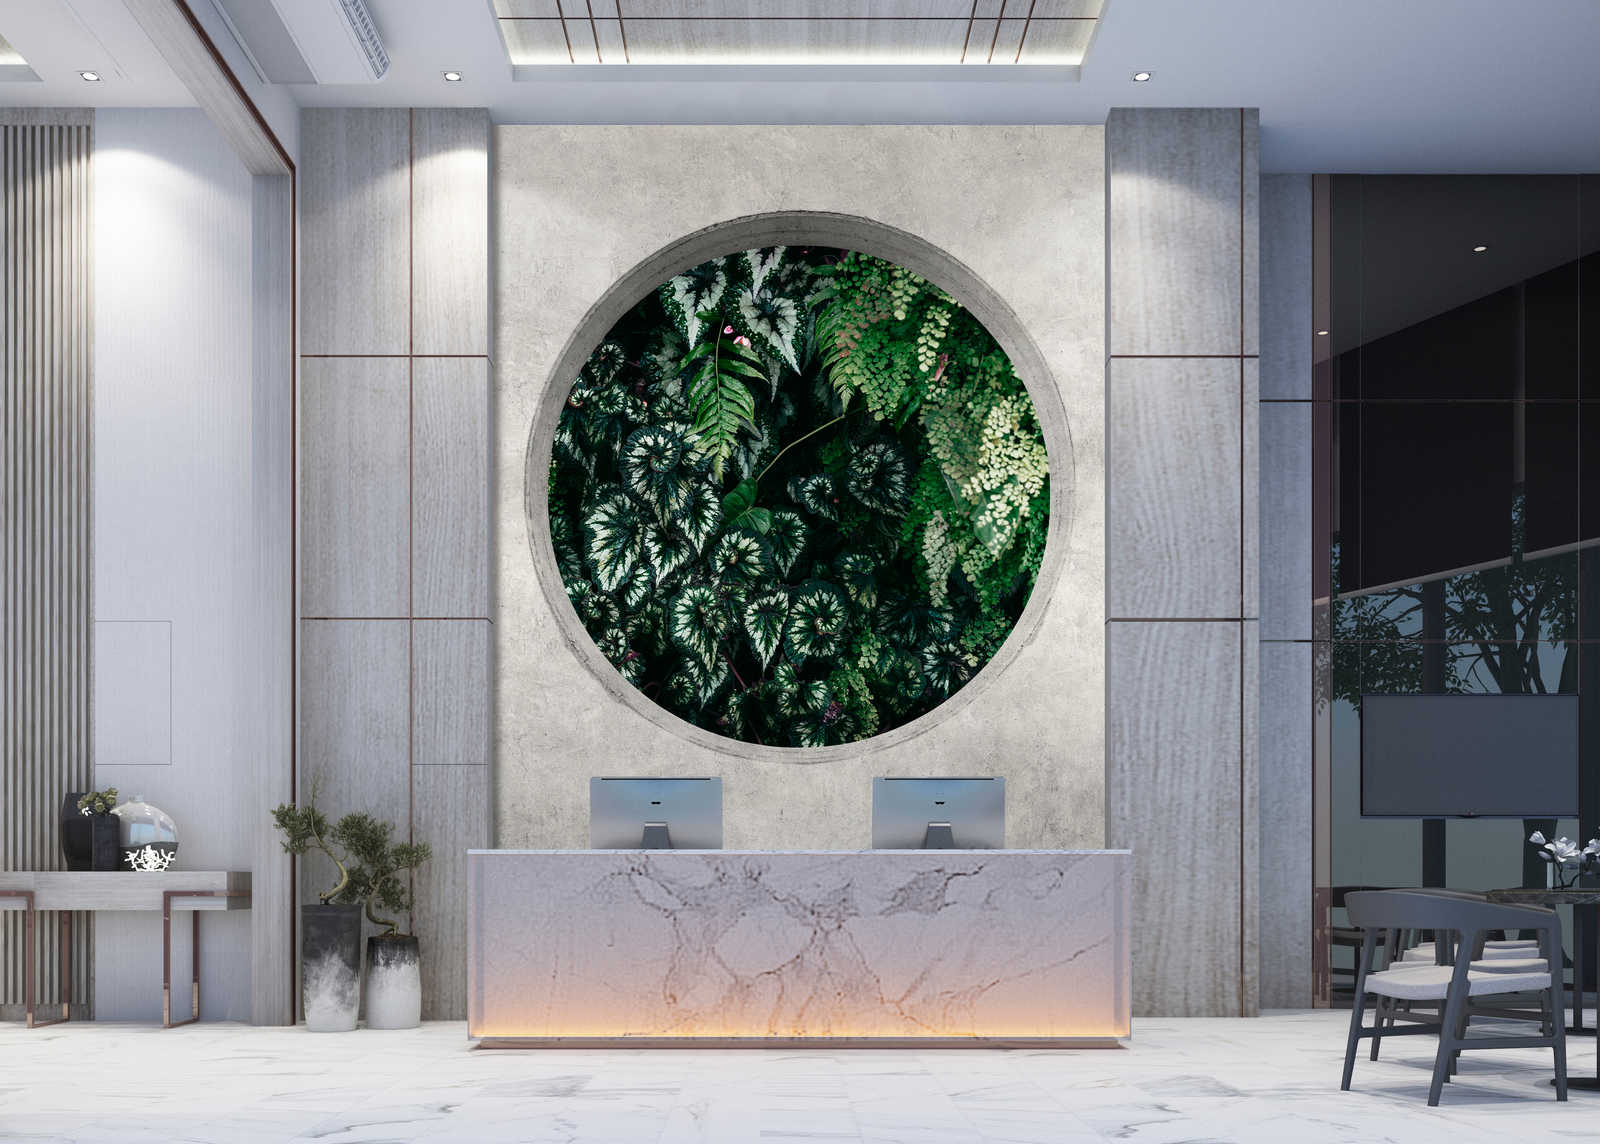             Deep Green 1 – Fototapete Fenster Rund mit Dschungel Pflanzen
        